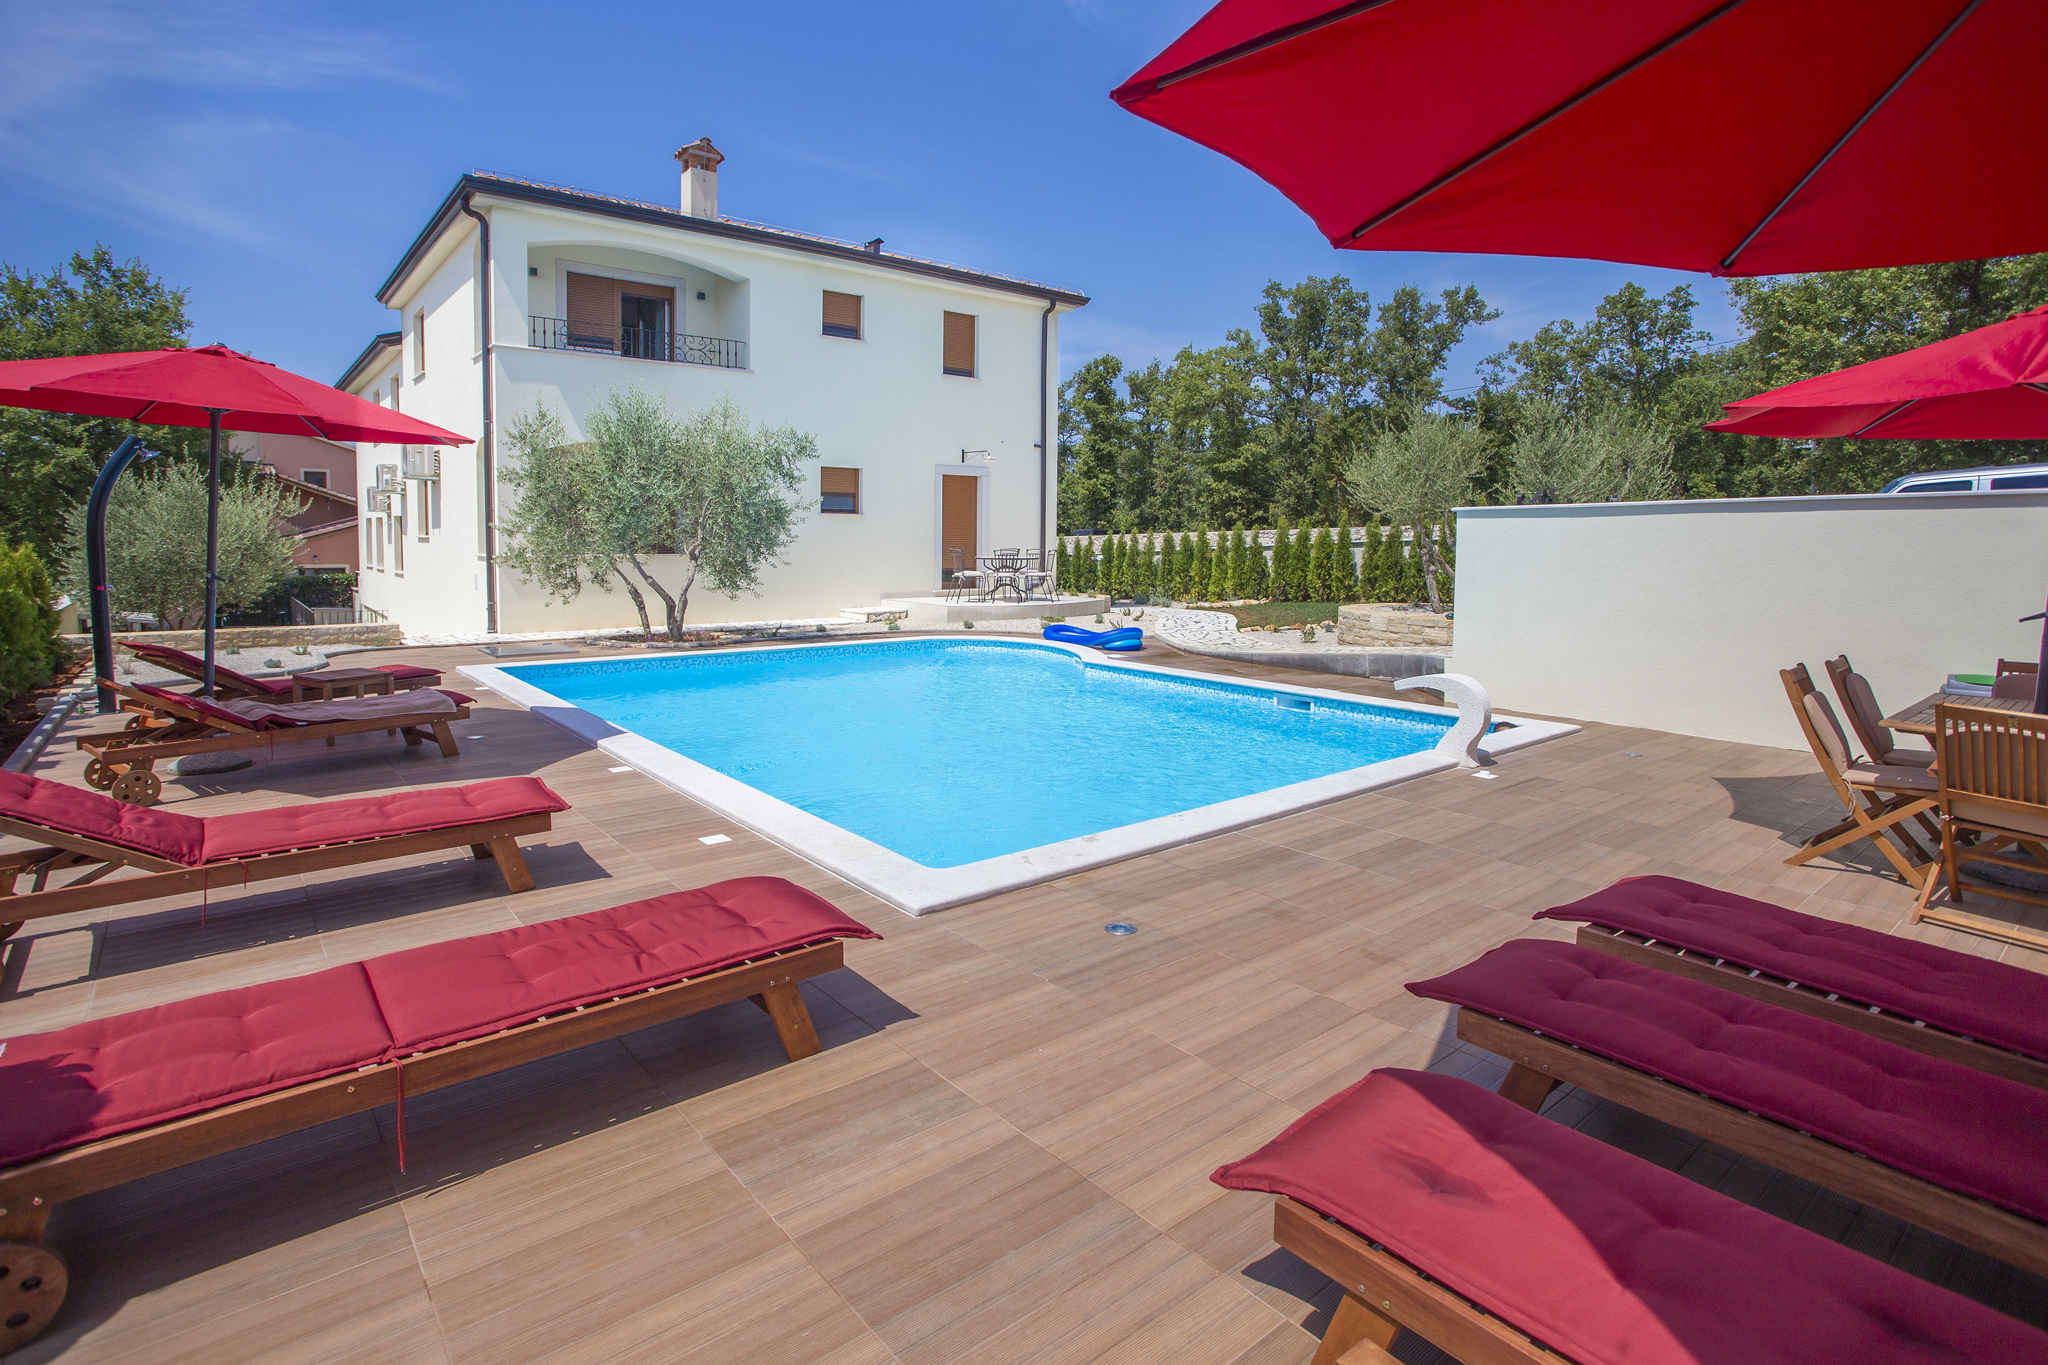 Ferienwohnung mit Pool und Gartengrill  in Istrien